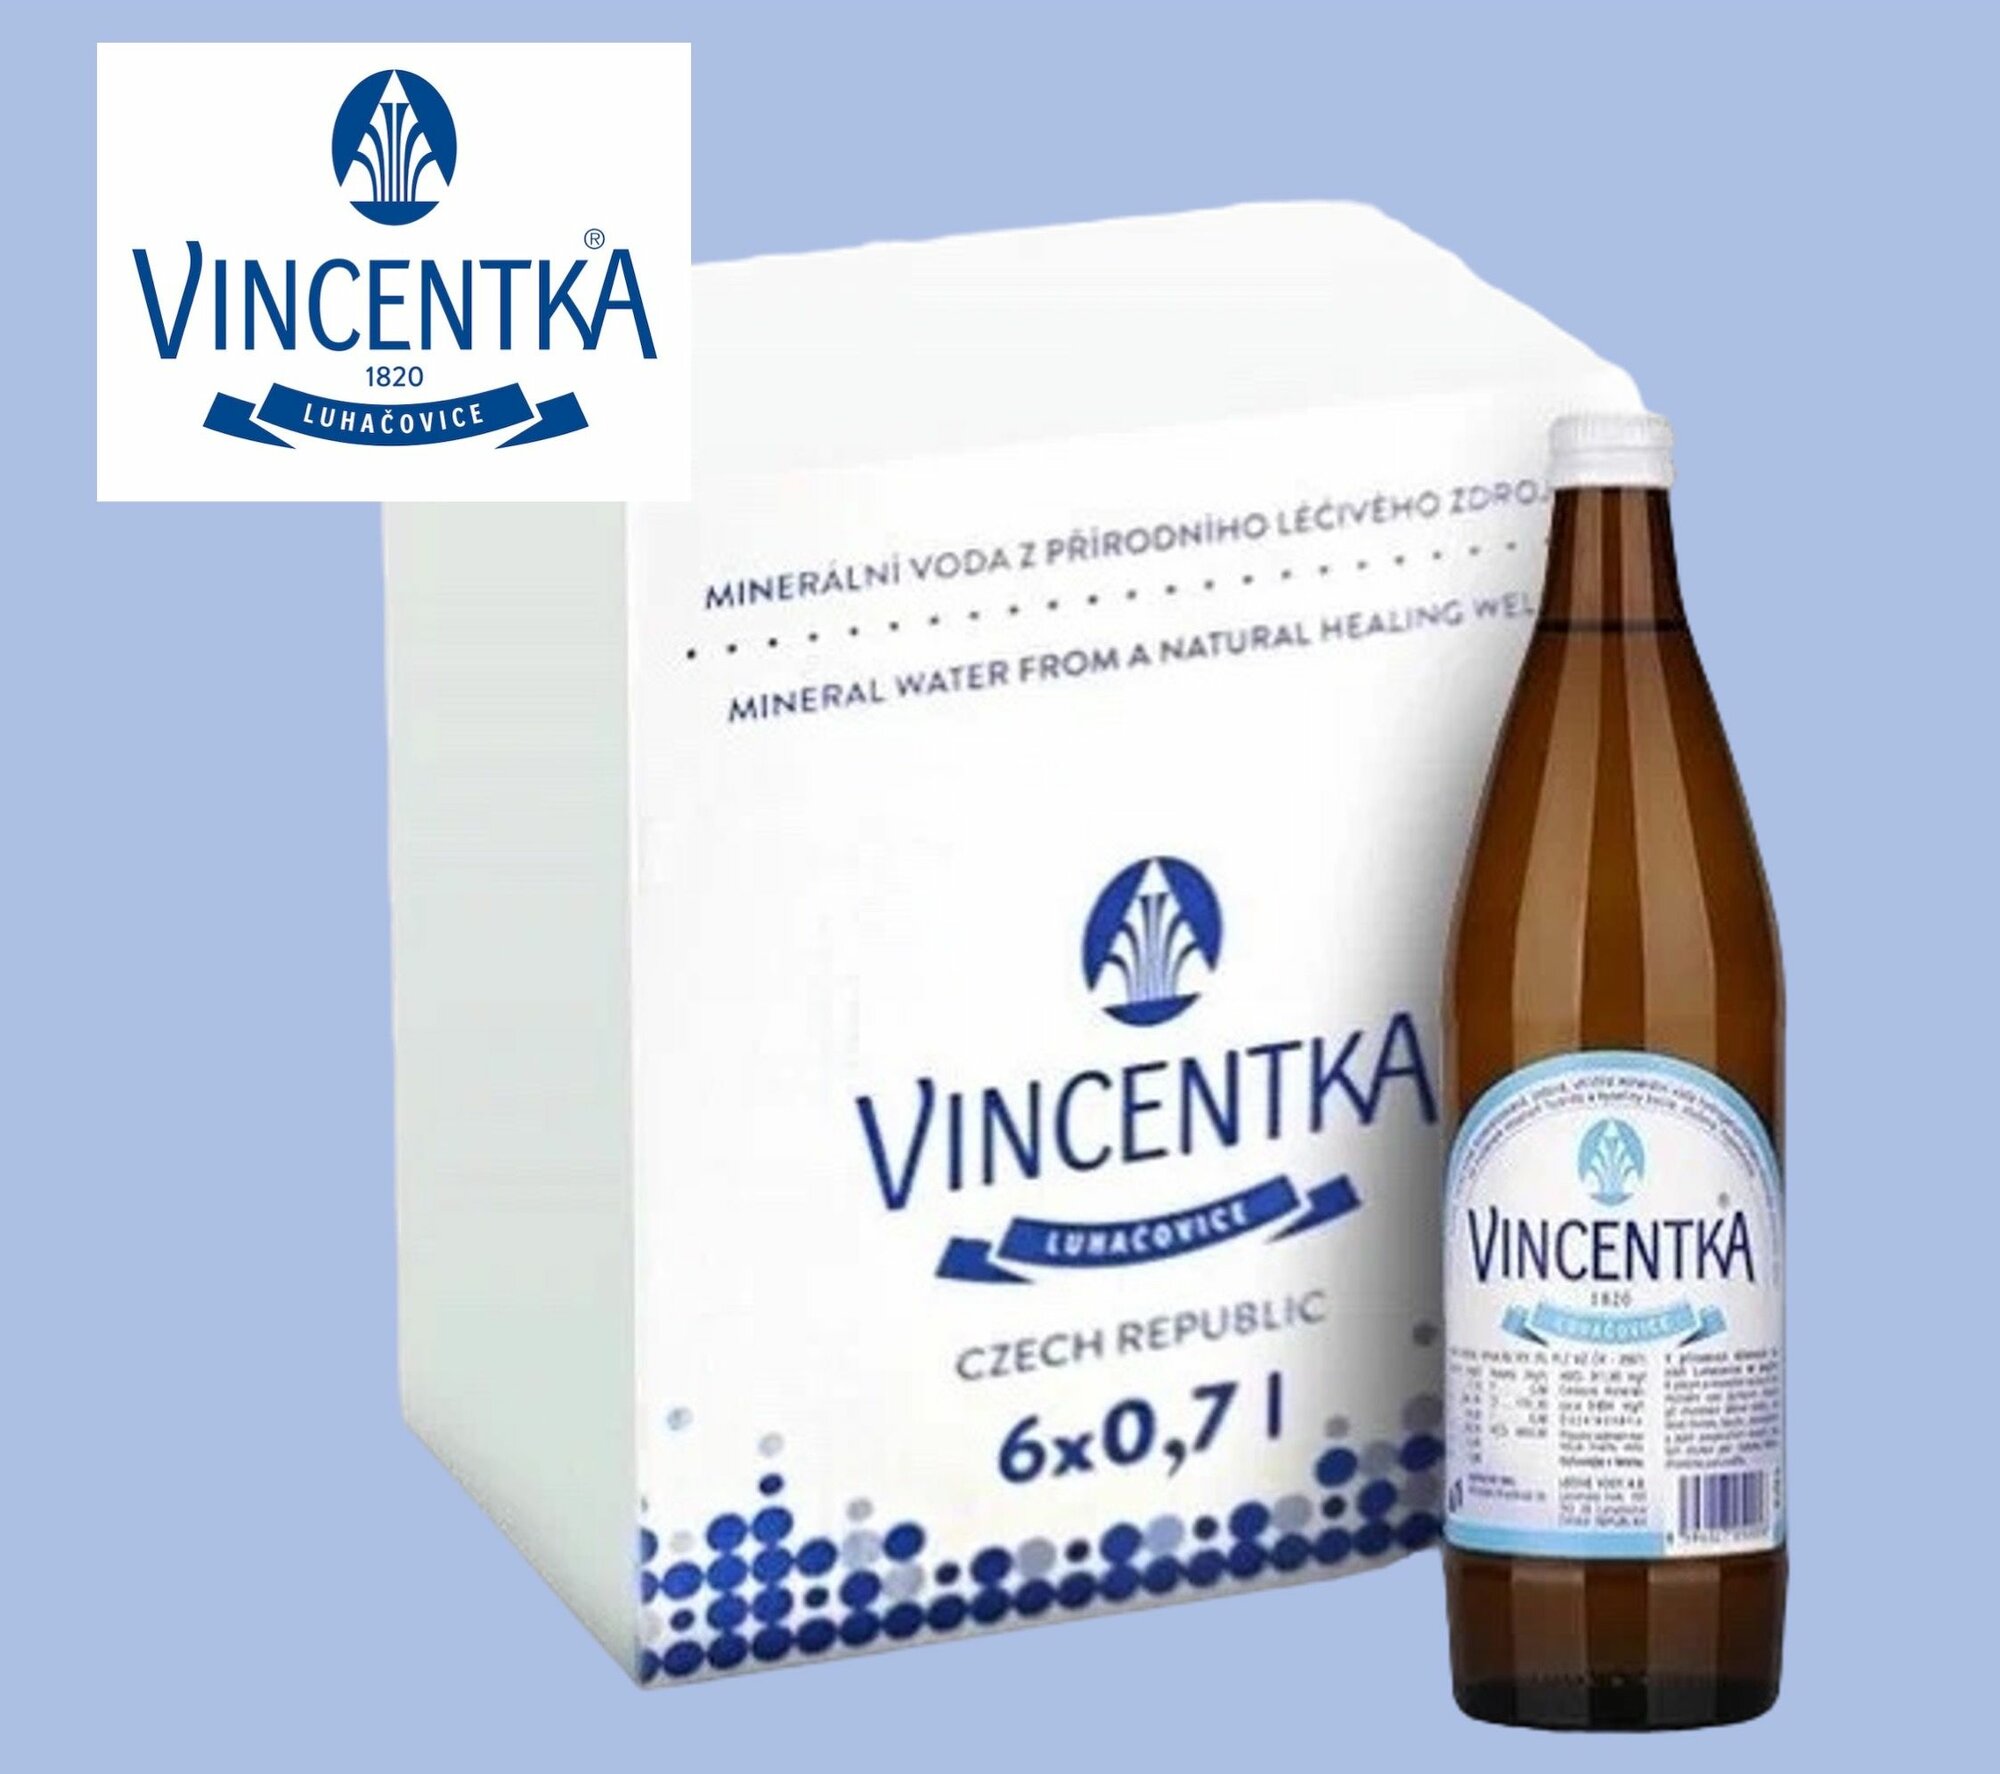 Вода минеральная лечебная Vincentka (Винцентка) 0,7 л х 6 шт. газированная, стекло